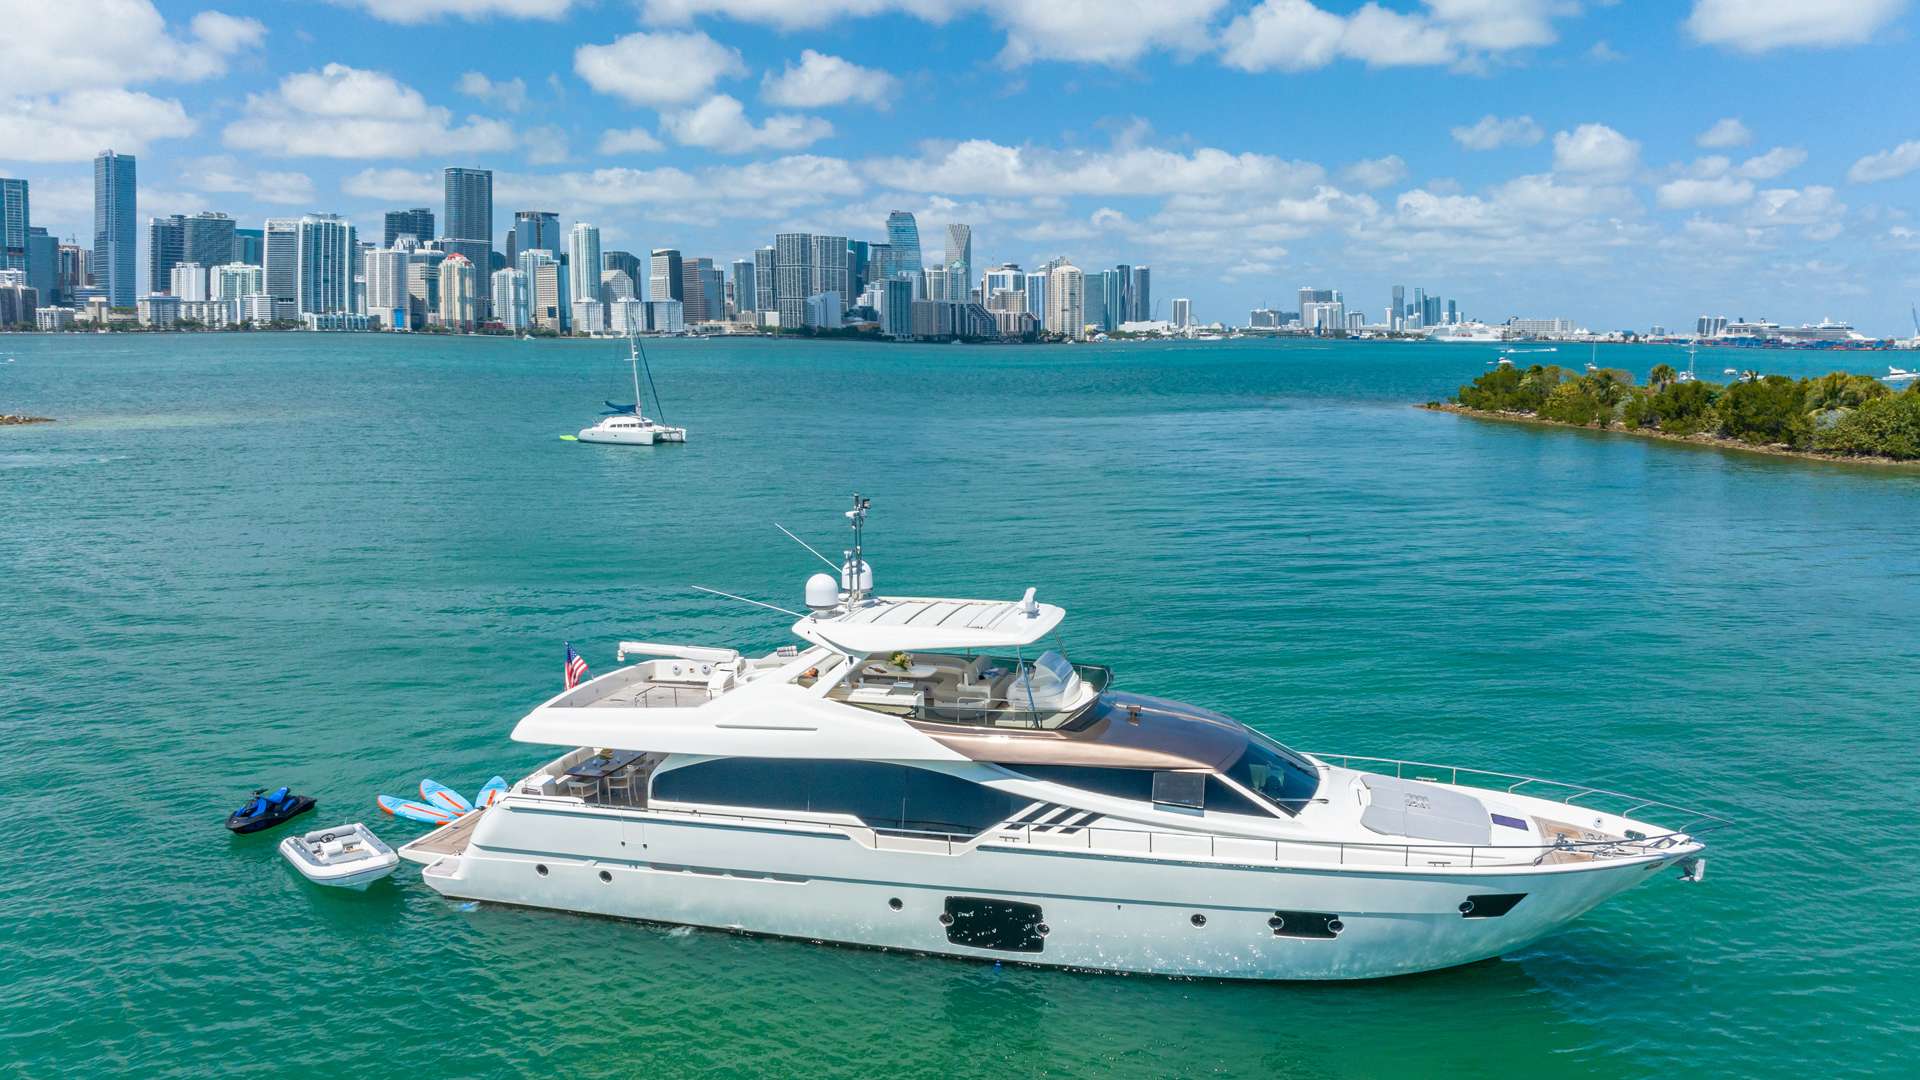 HOYA SAXA - Yacht Charter Newport & Boat hire in US East Coast & Bahamas 2